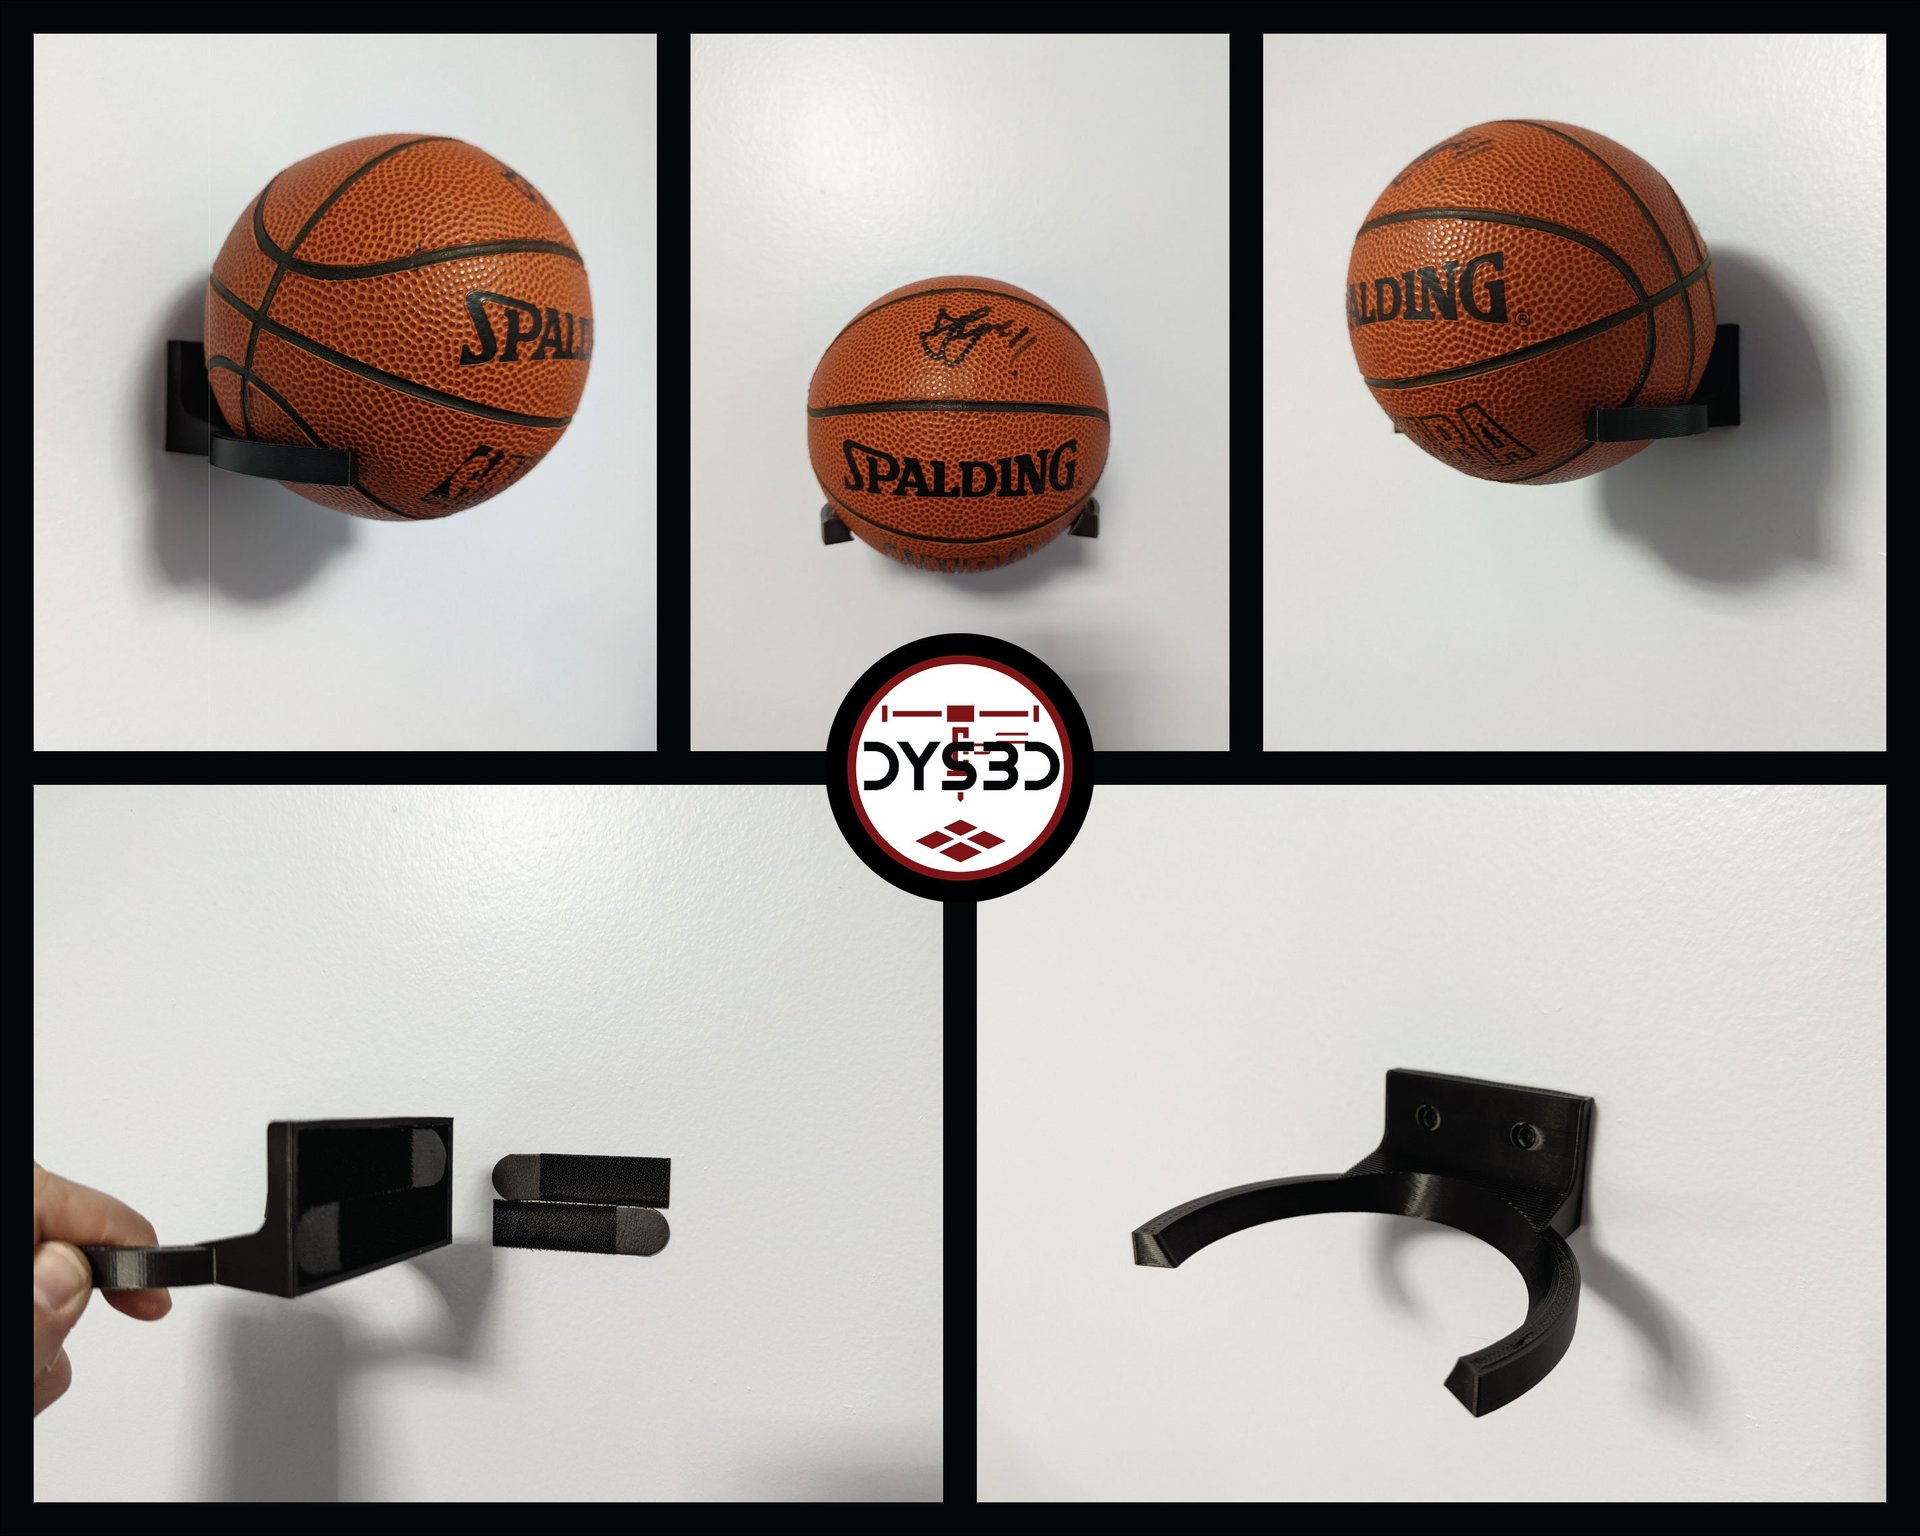 Mini-Basketball Wall Display Holder